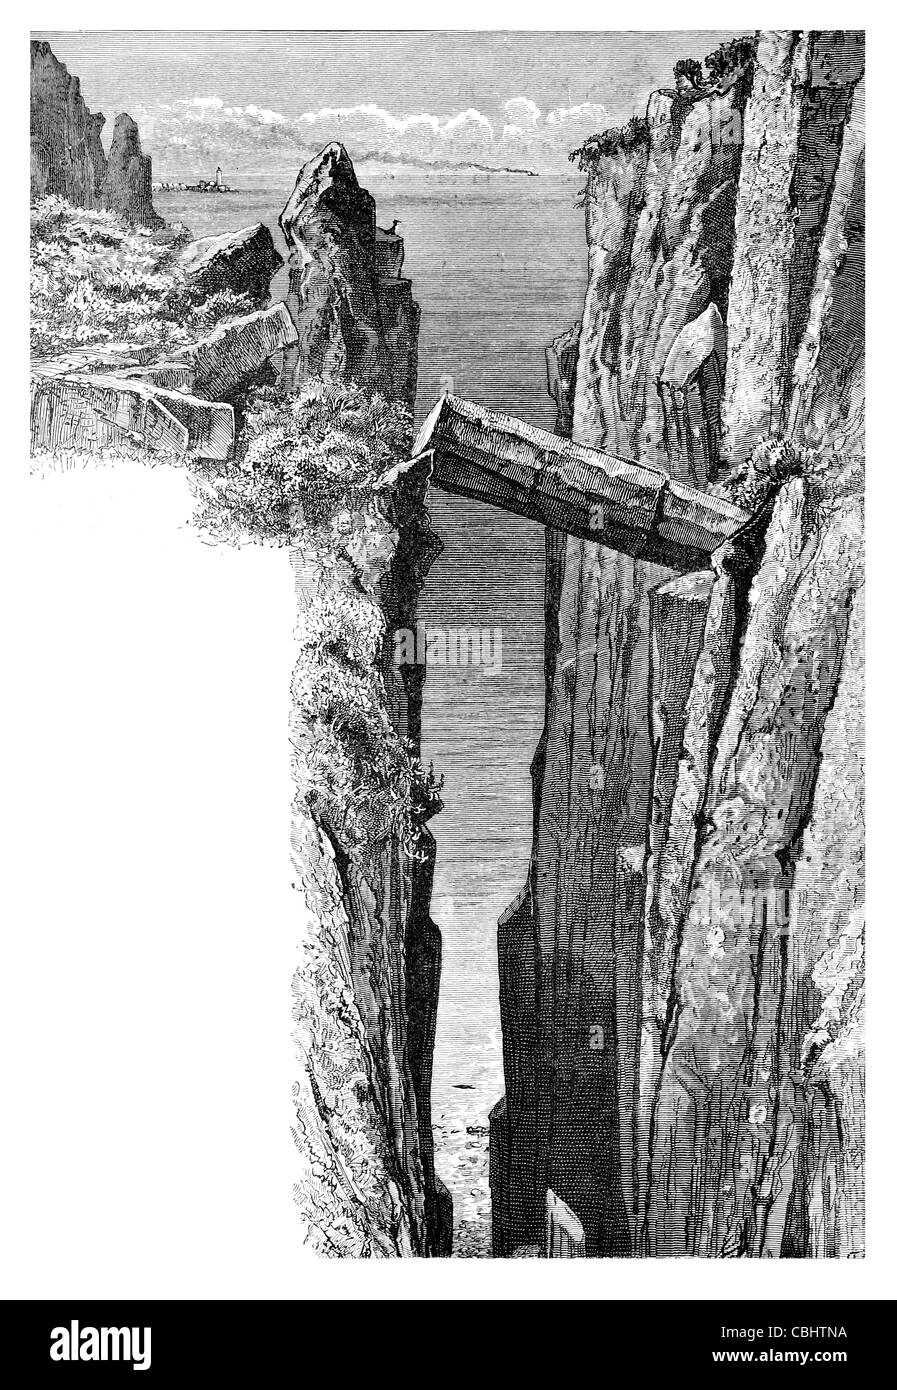 Chemin de l'Homme gris Giant's Causeway côte d'Antrim volcaniques anciens irlandais Irlande colonnes de basalte de l'UNESCO Site du patrimoine mondial Banque D'Images